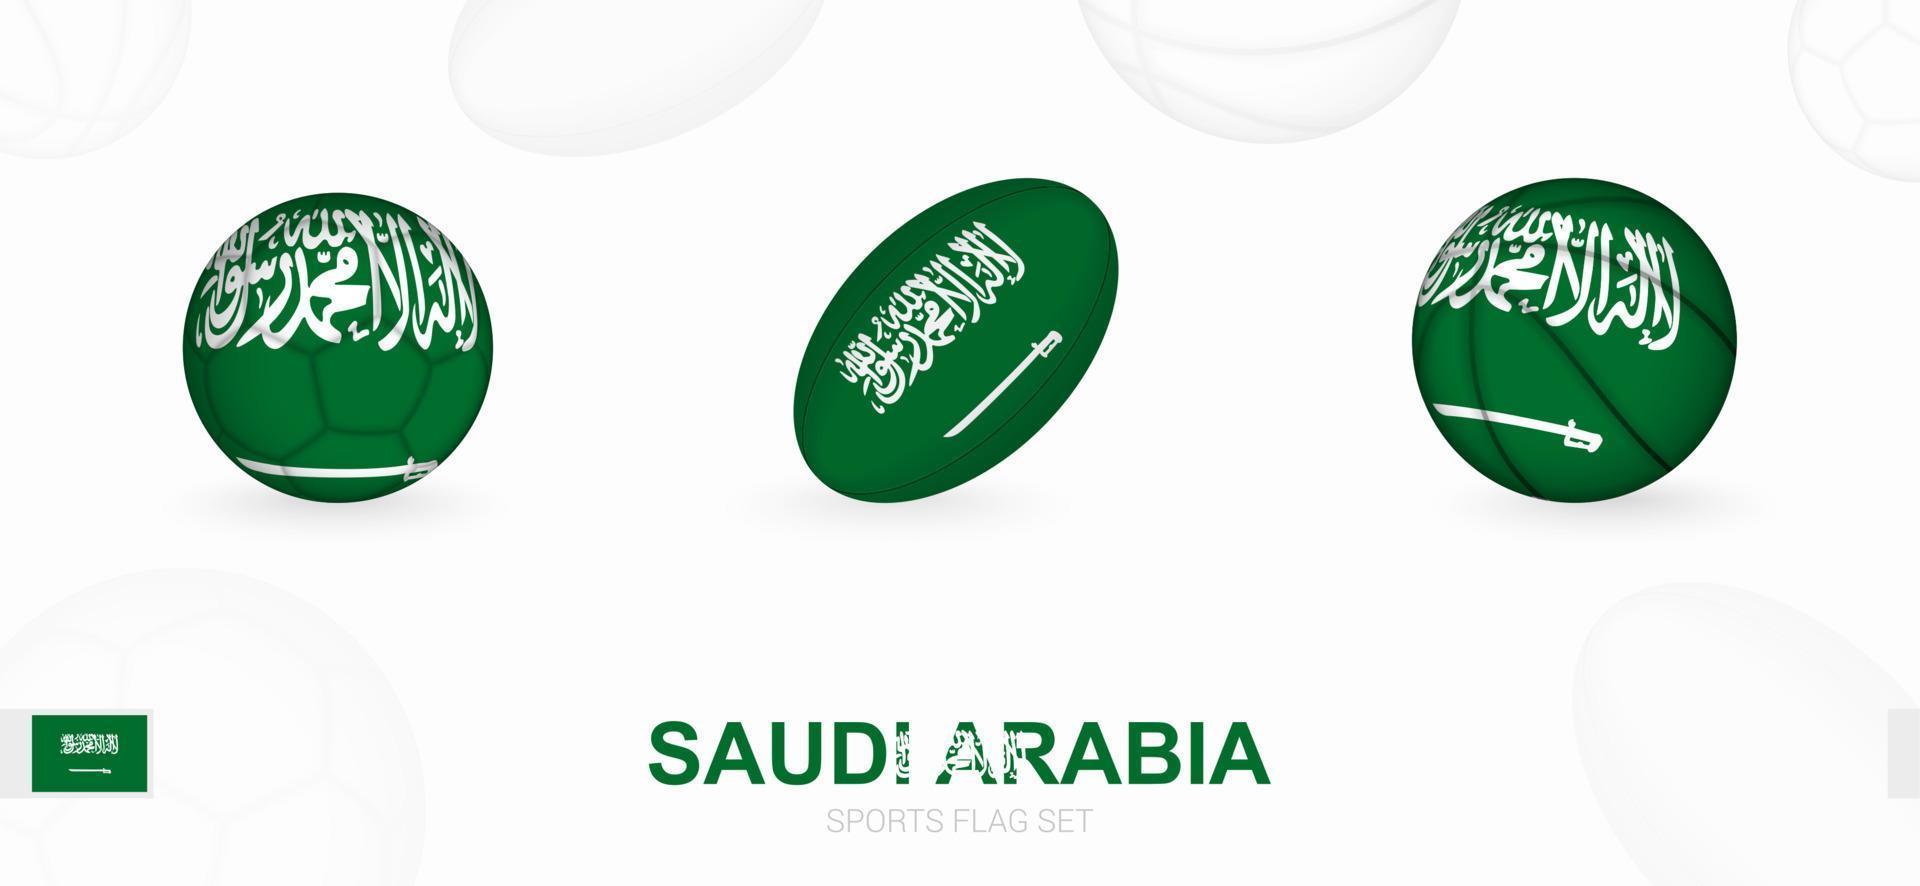 Deportes íconos para fútbol, rugby y baloncesto con el bandera de saudi arabia vector